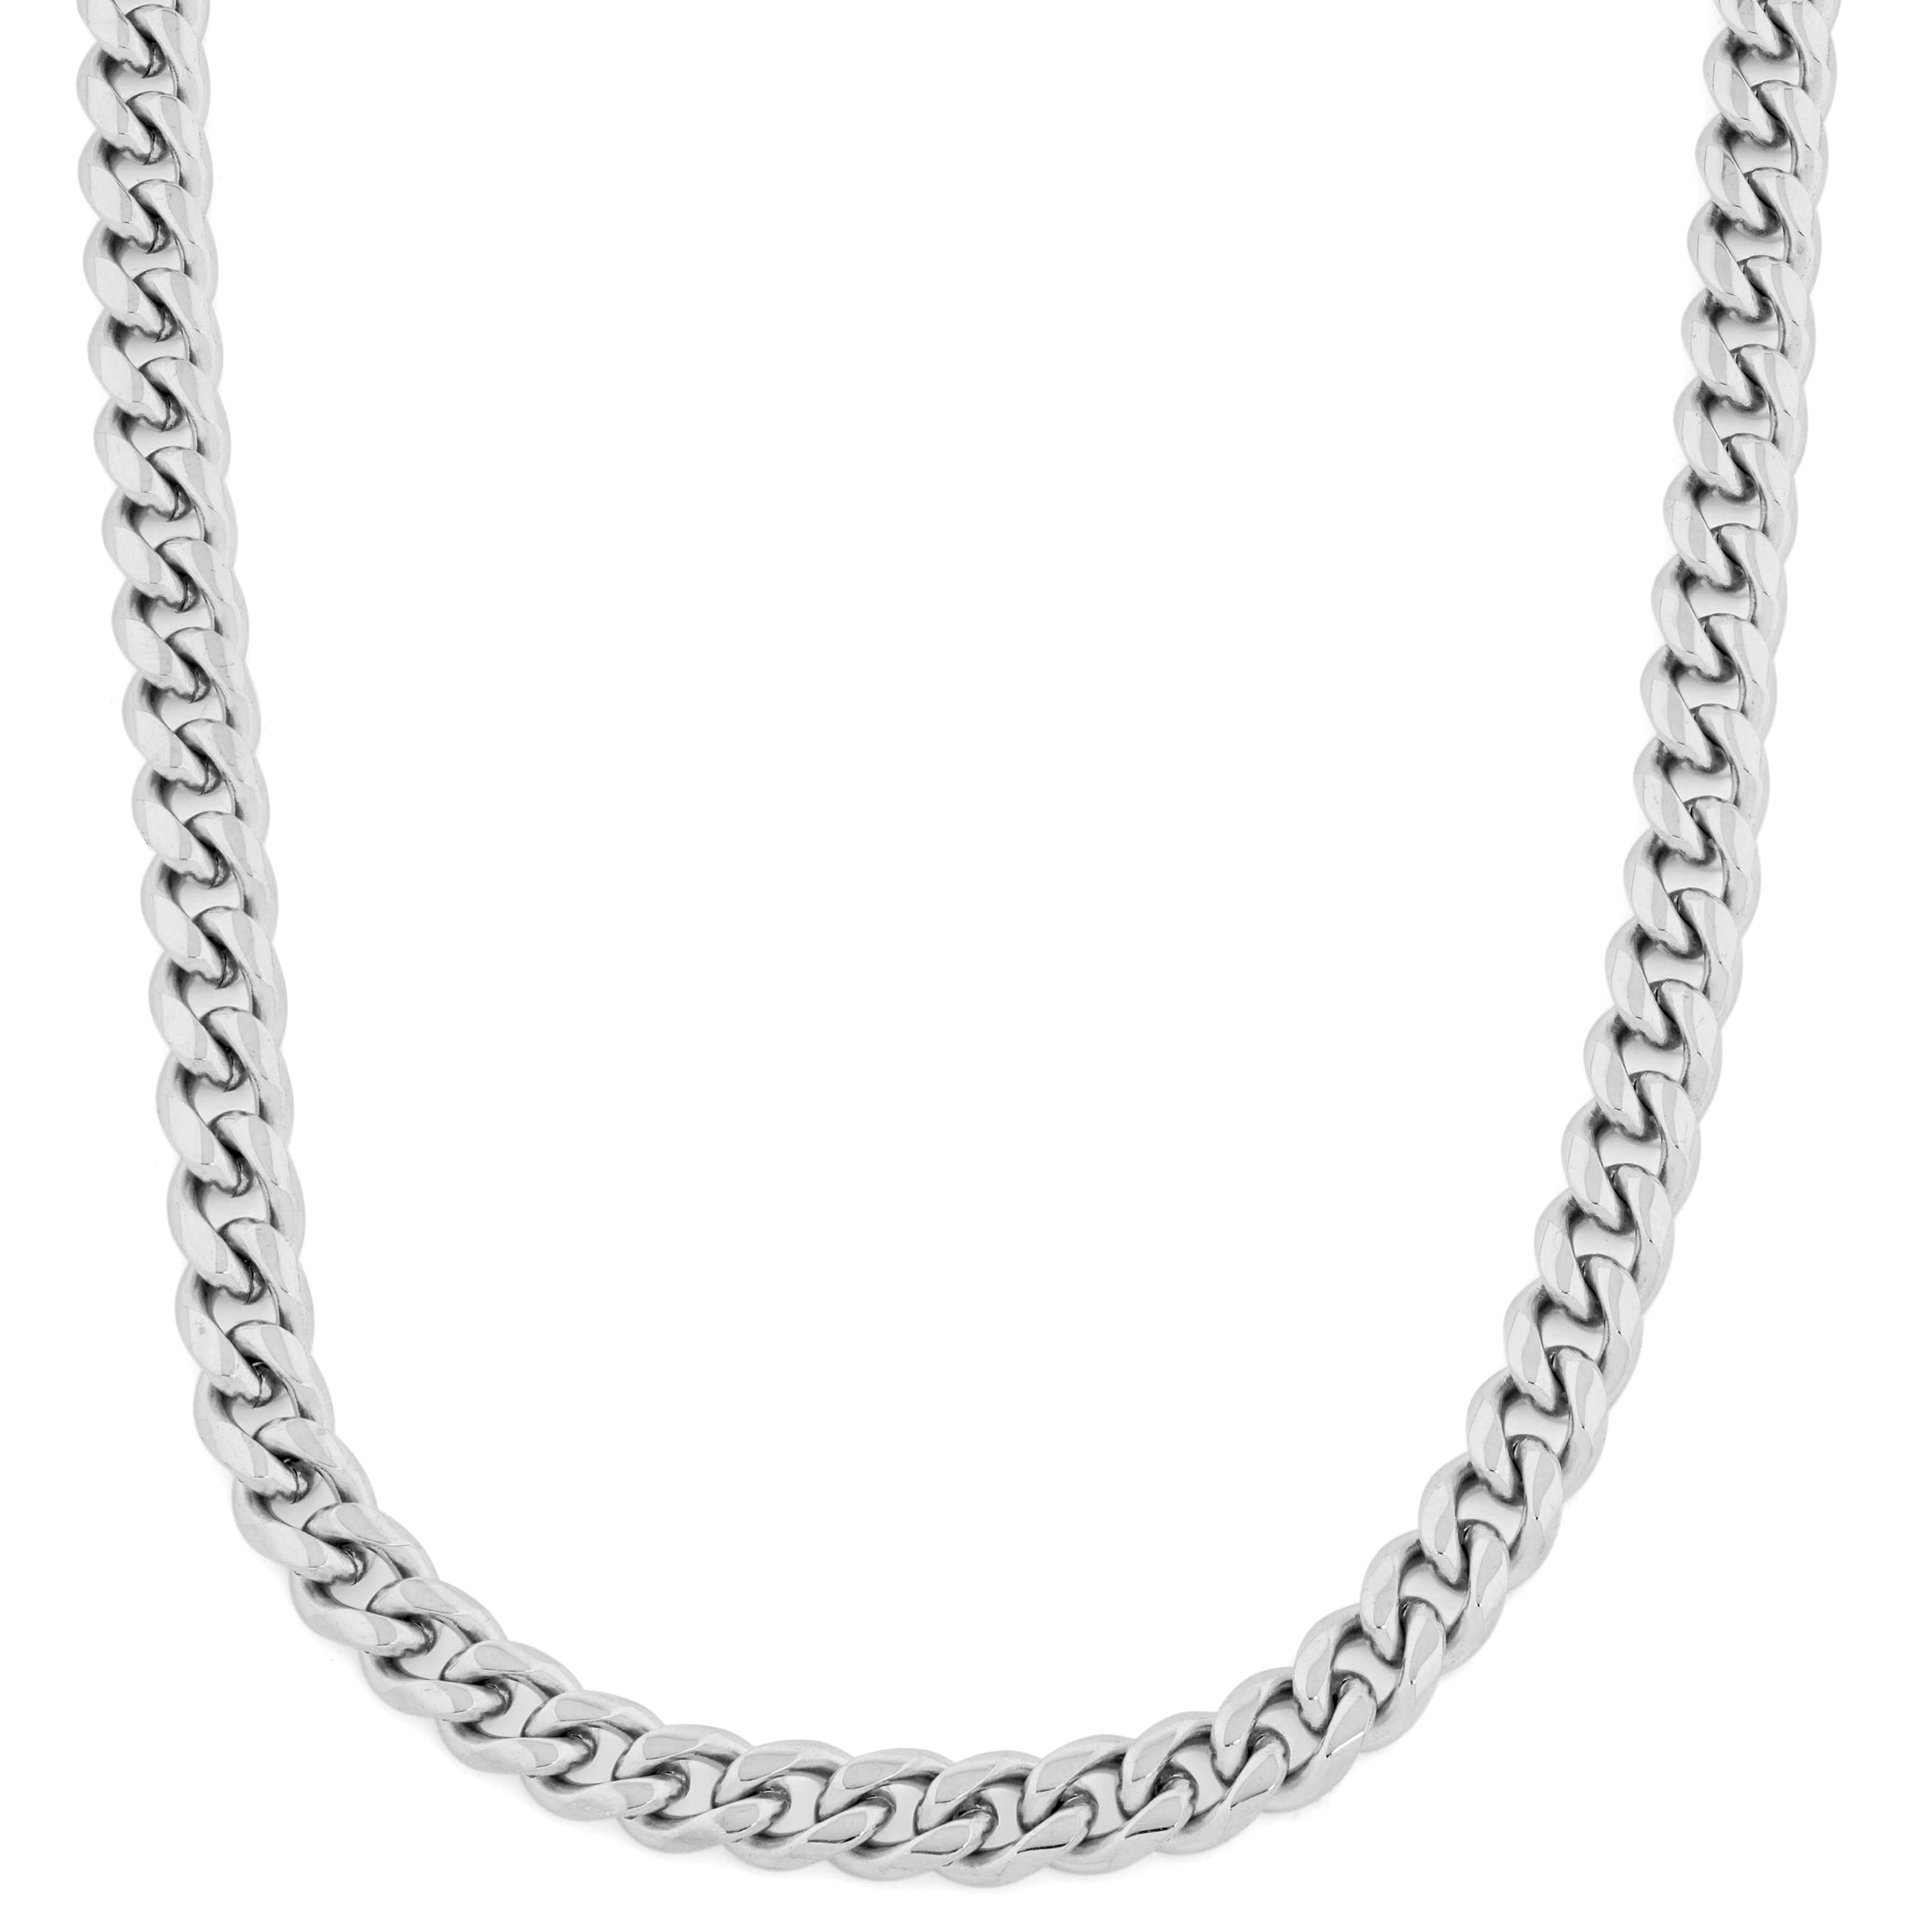 Silberfarbene Ketten Halskette 10mm